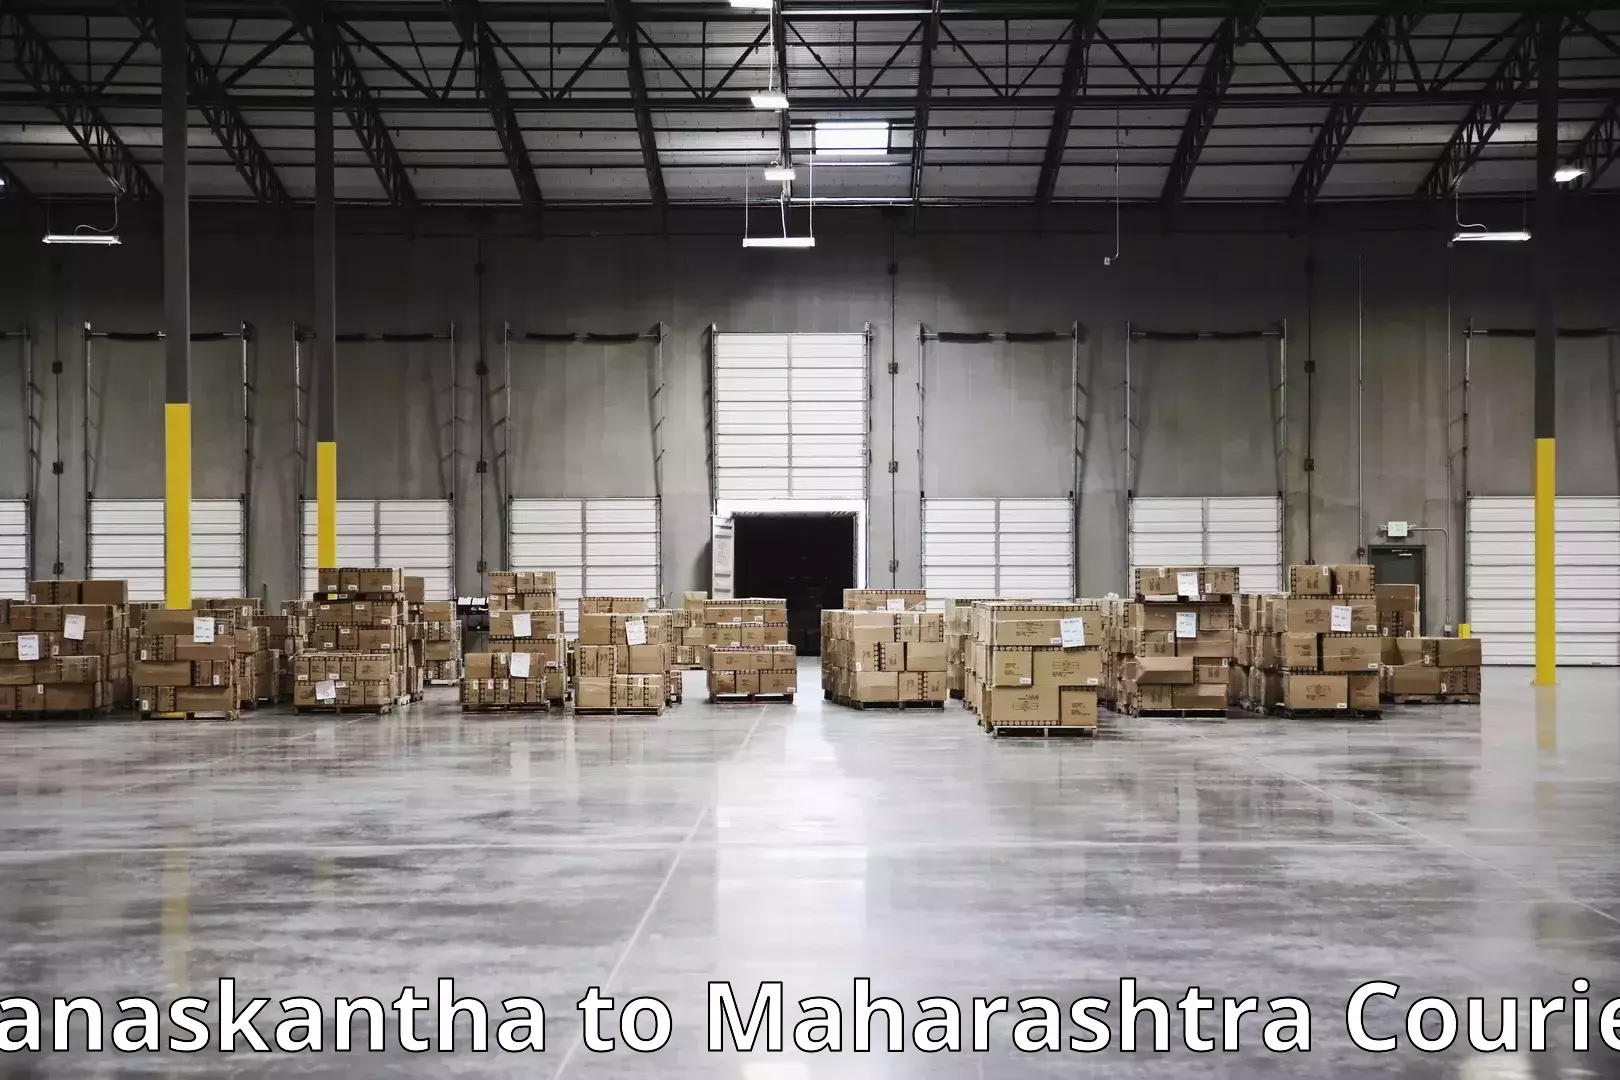 Moving and handling services Banaskantha to Maharashtra